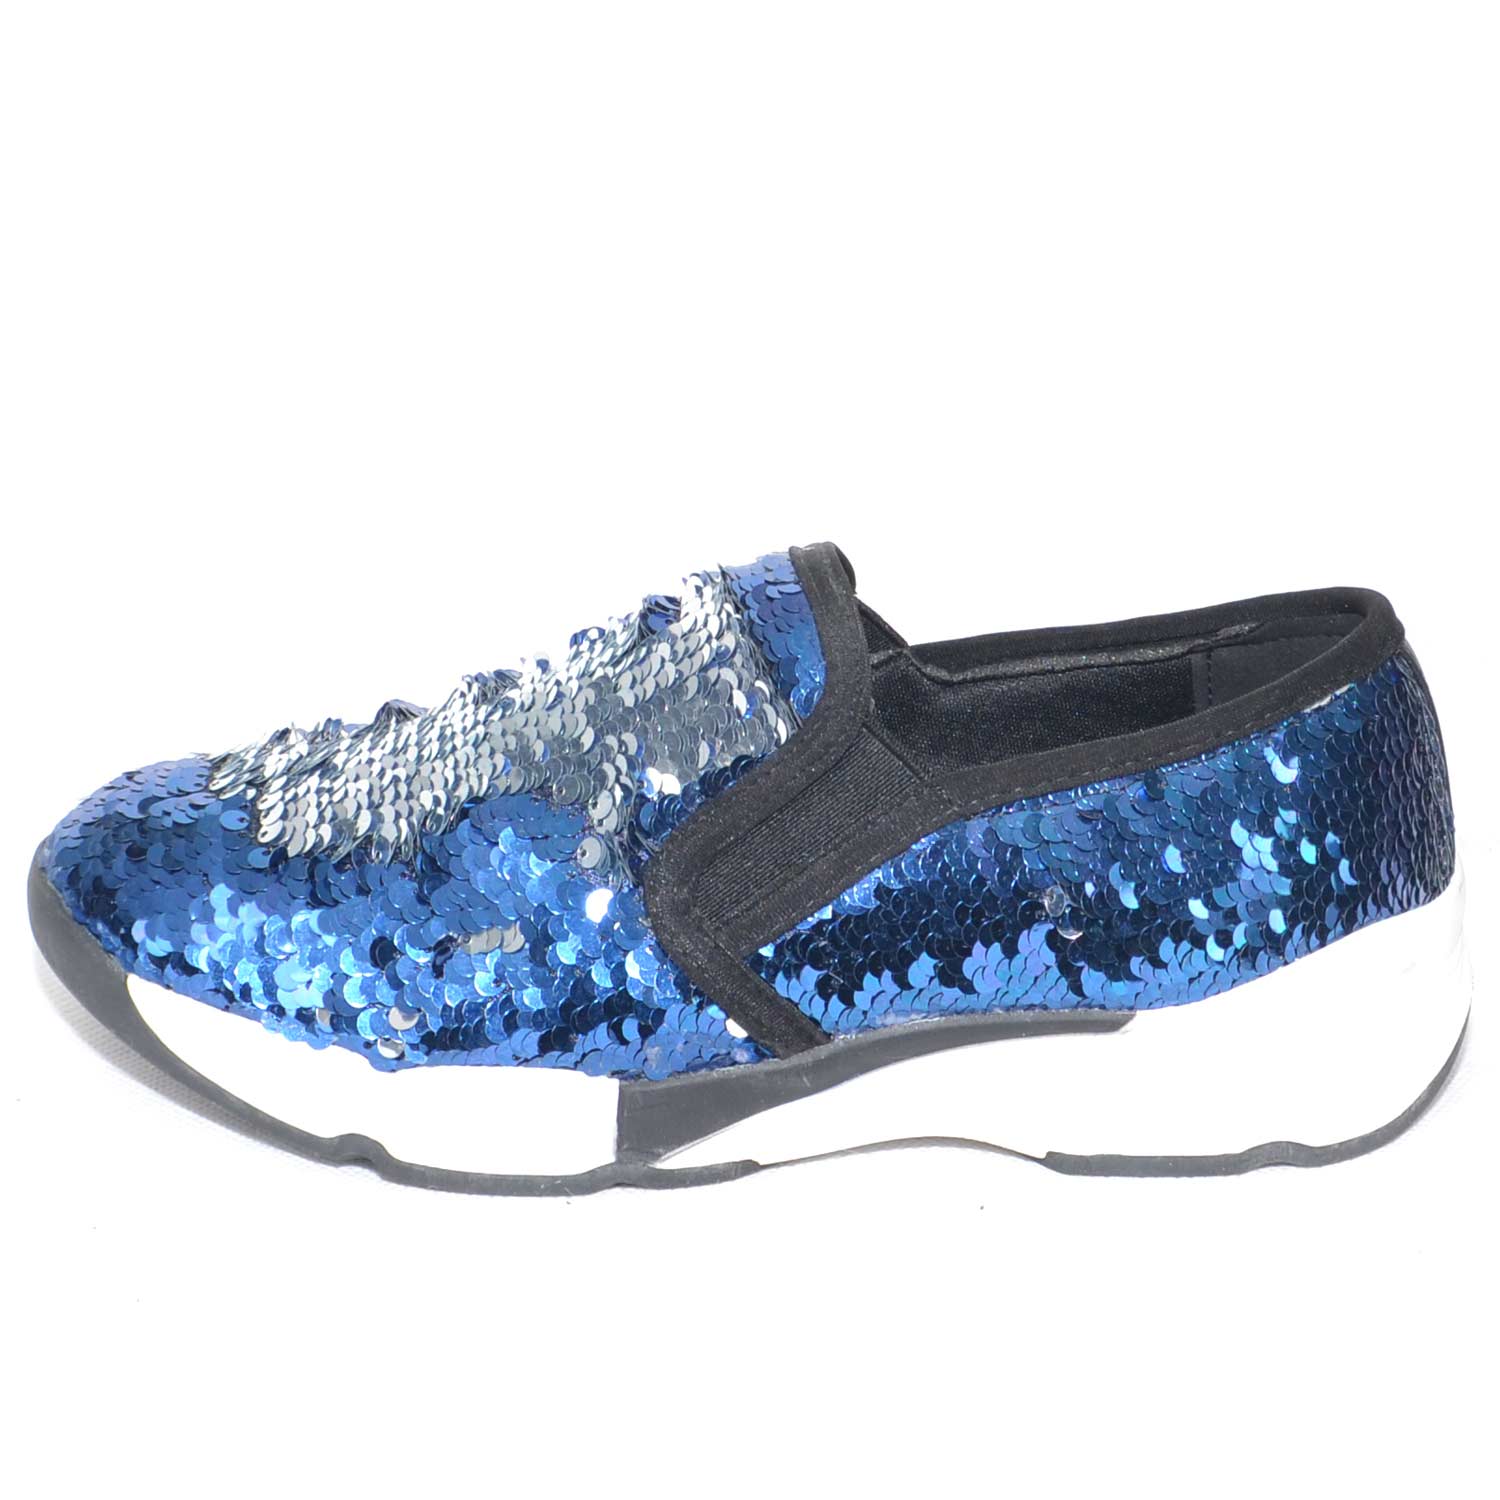 Sneakers bassa in paillettes argento e blu rivoltabili con fondo plat bicolore.